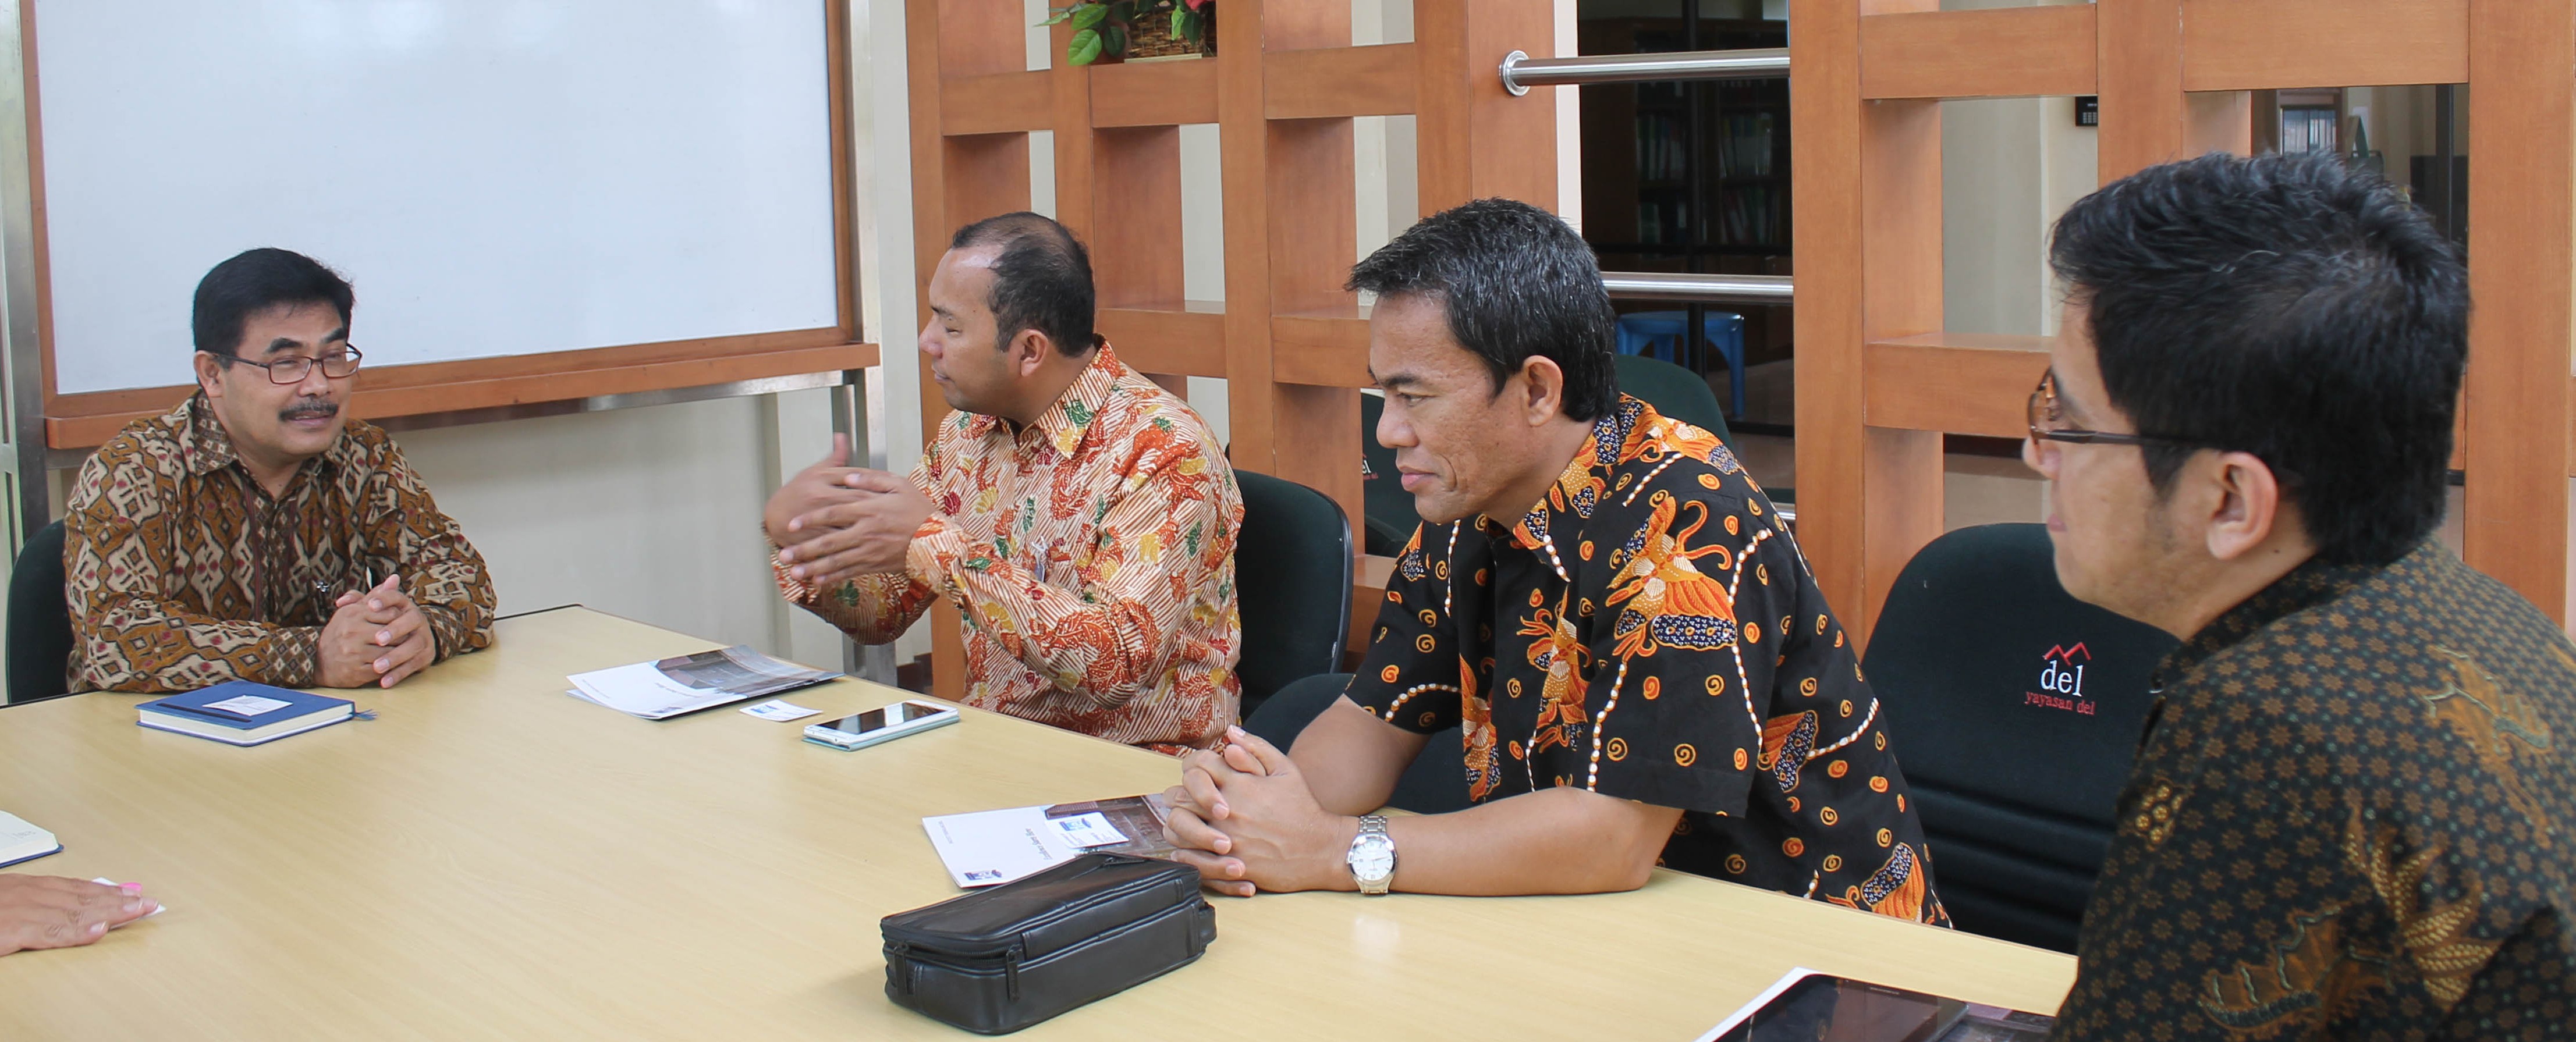 Mandiri Bank CEO Region I/ Sumatera 1 Visits IT Del